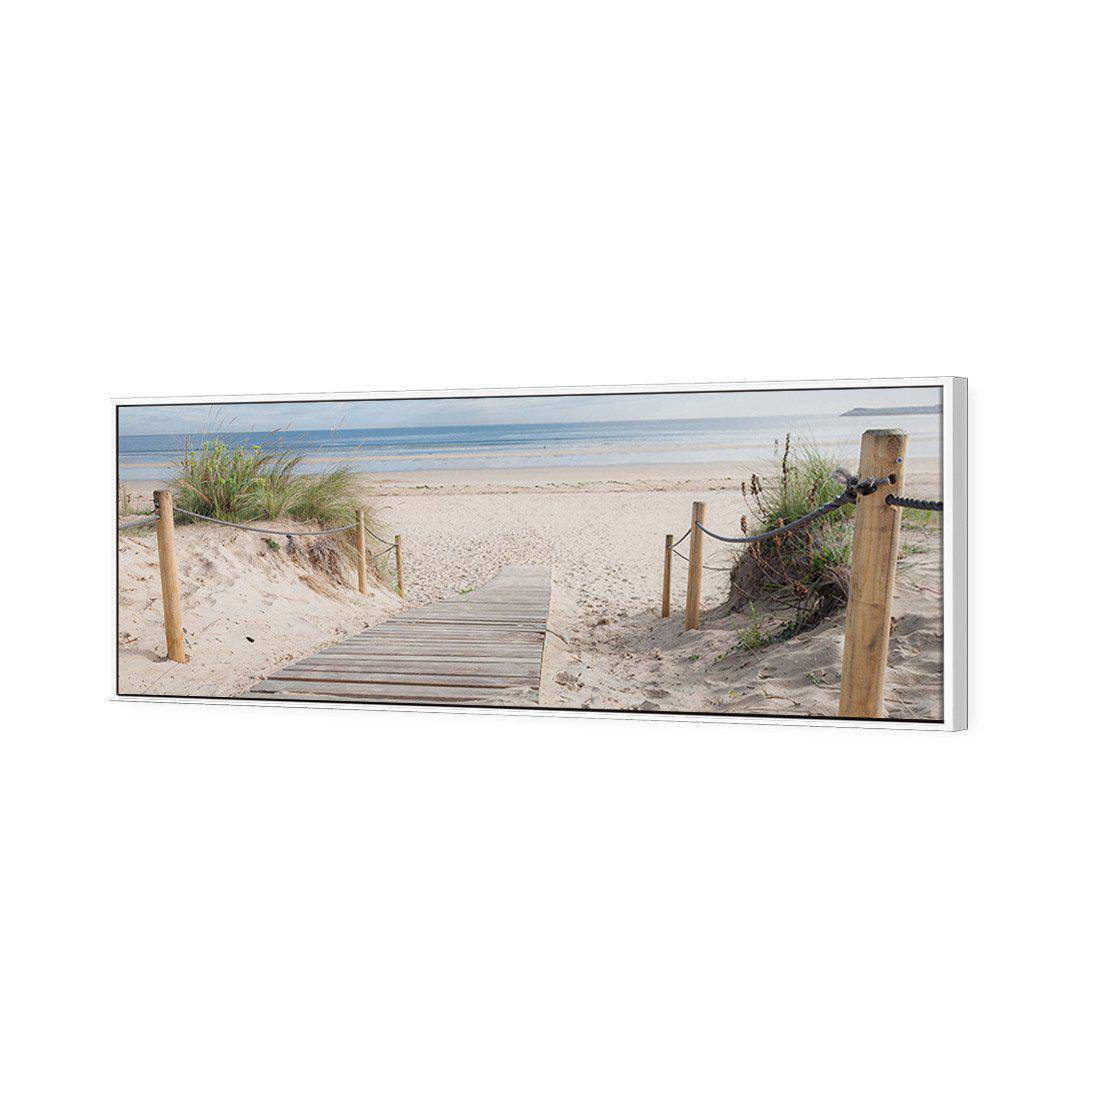 Beach Path Canvas Art-Canvas-Wall Art Designs-60x20cm-Canvas - White Frame-Wall Art Designs